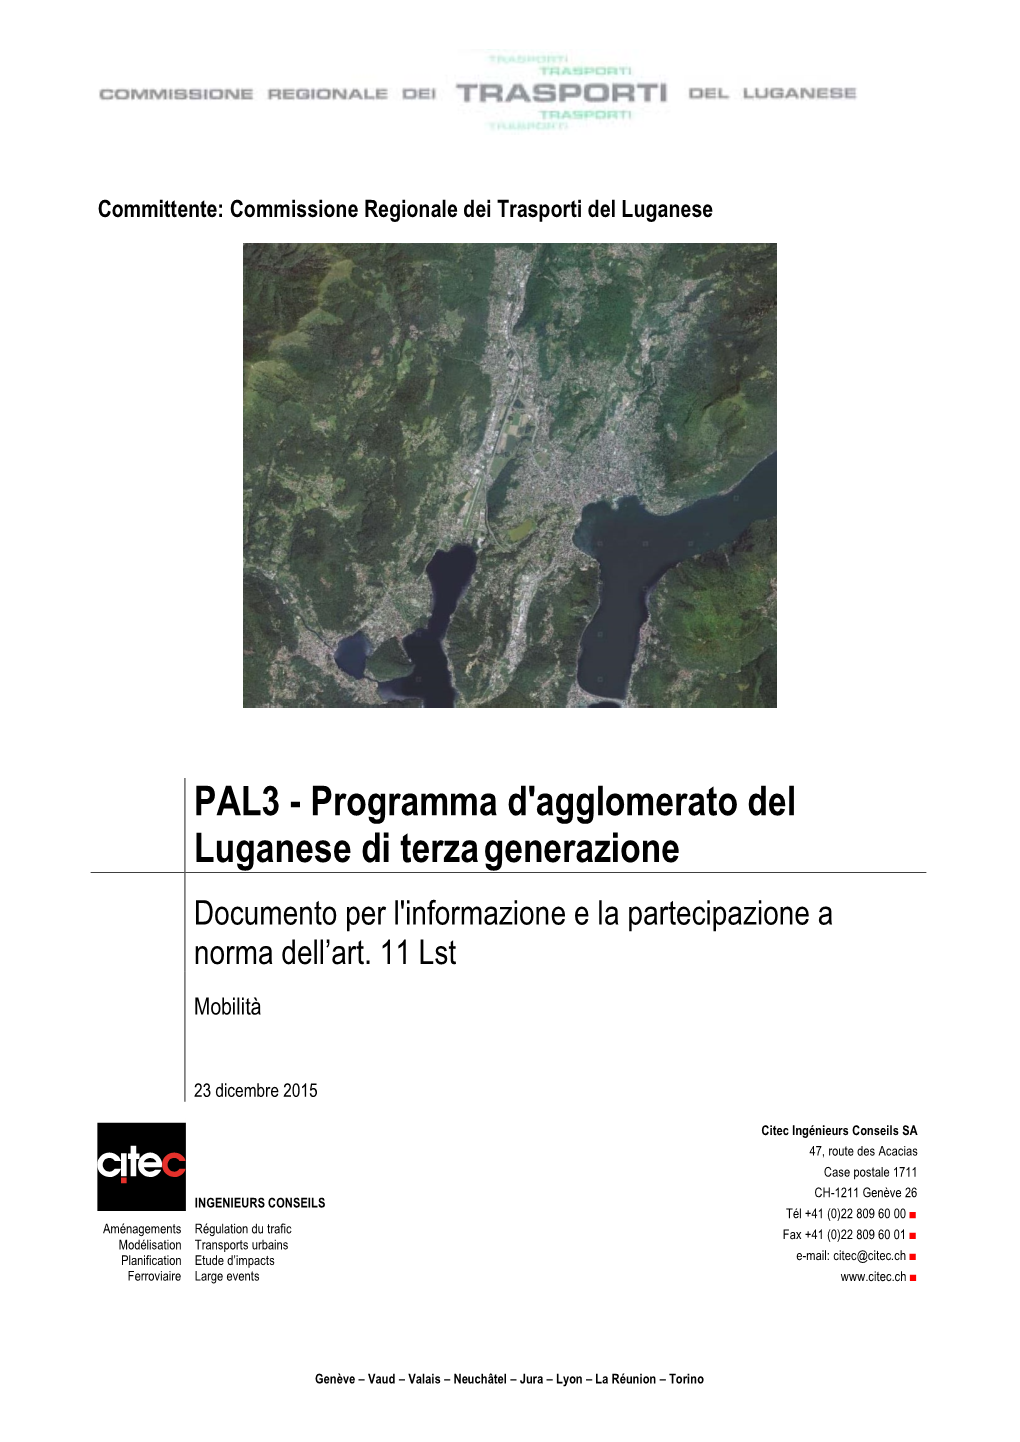 PAL3 - Programma D'agglomerato Del Luganese Di Terza Generazione